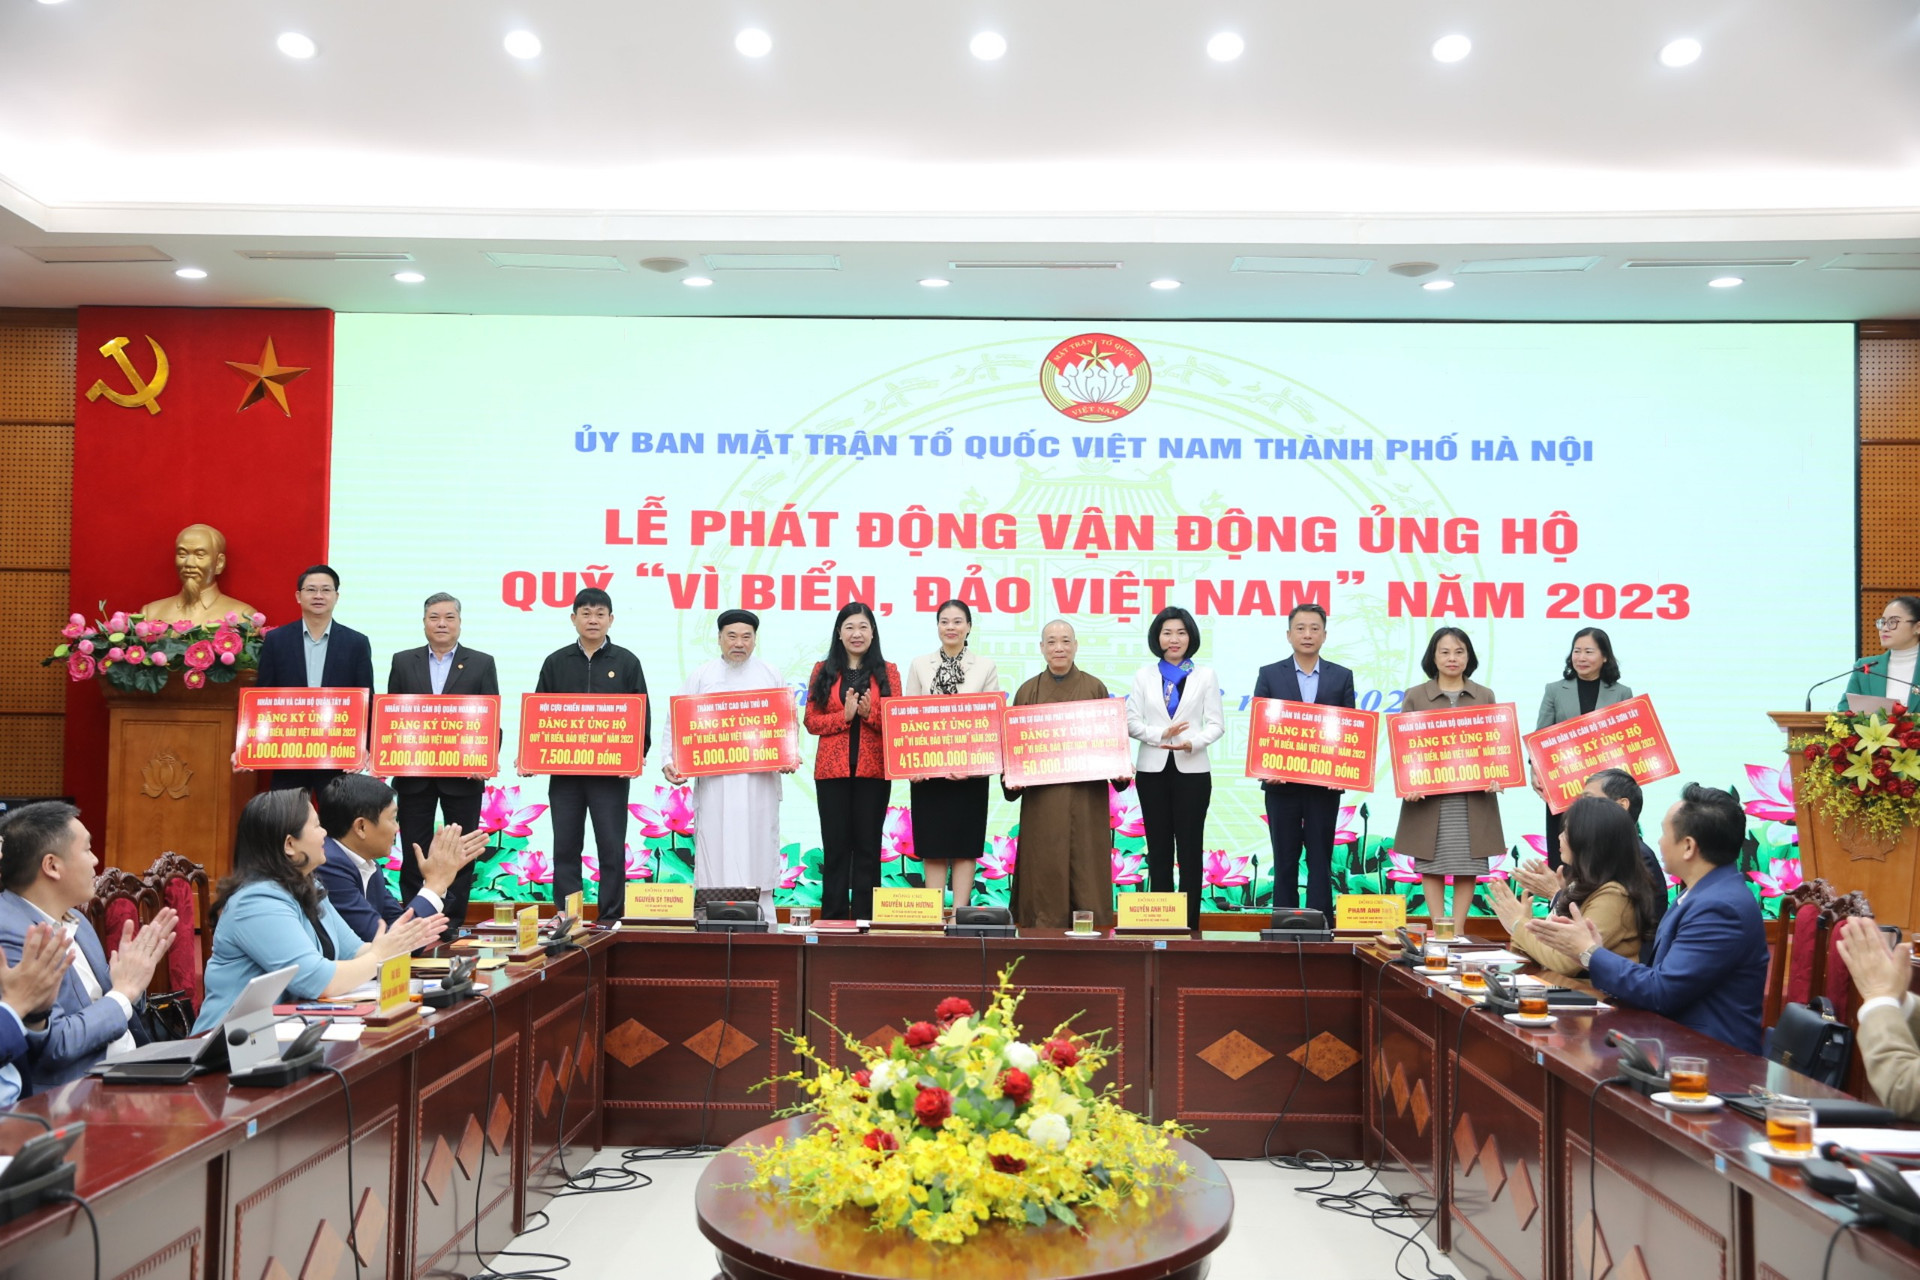 Lãnh đạo thành phố Hà Nội tiếp nhận ủng hộ Quỹ Vì biển đảo Việt Nam từ các đơn vị.